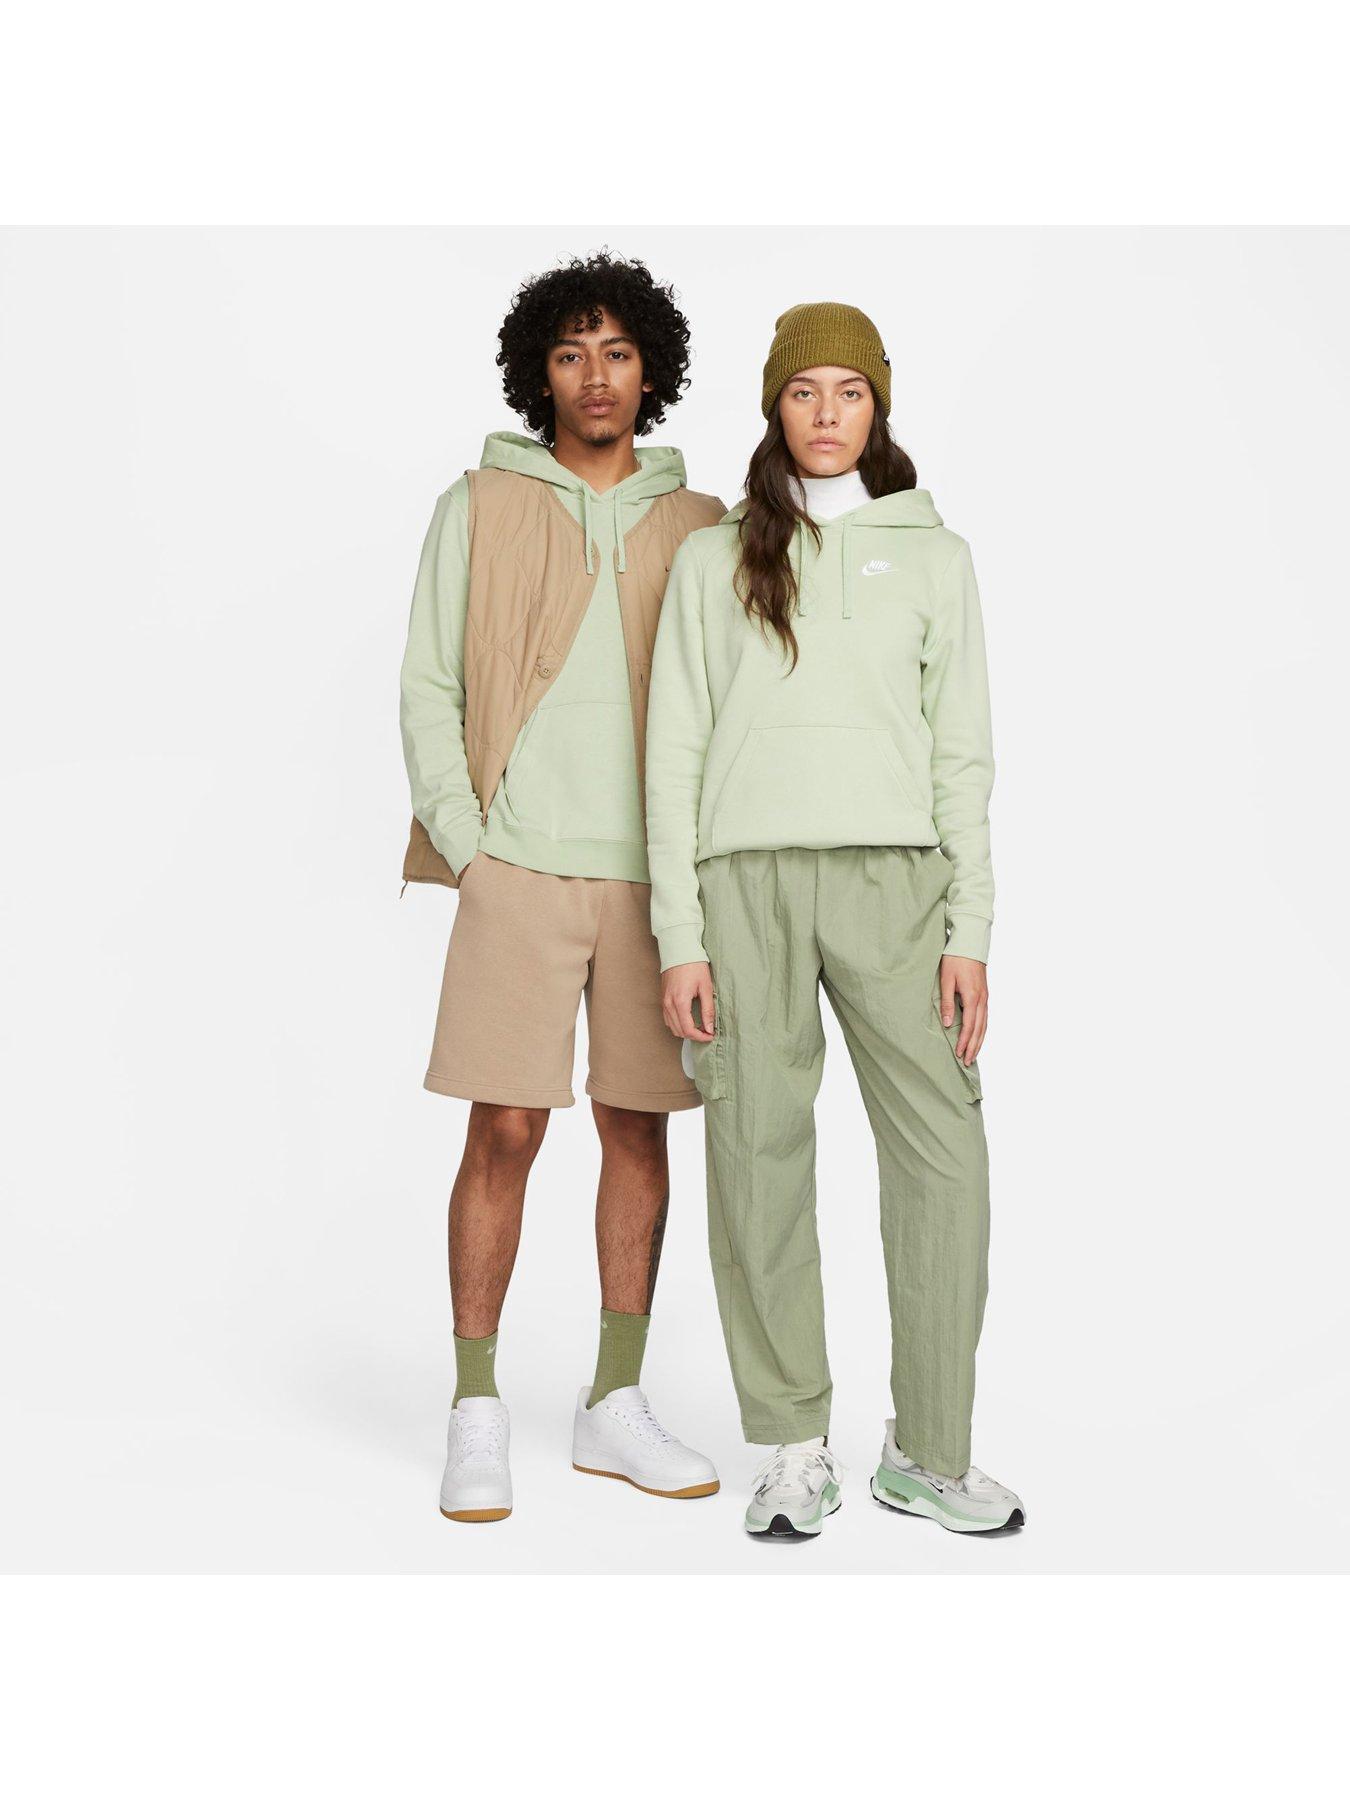 Nike Sportswear Club Fleece Women's Pullover Hoodie - Beige (Plus Size)